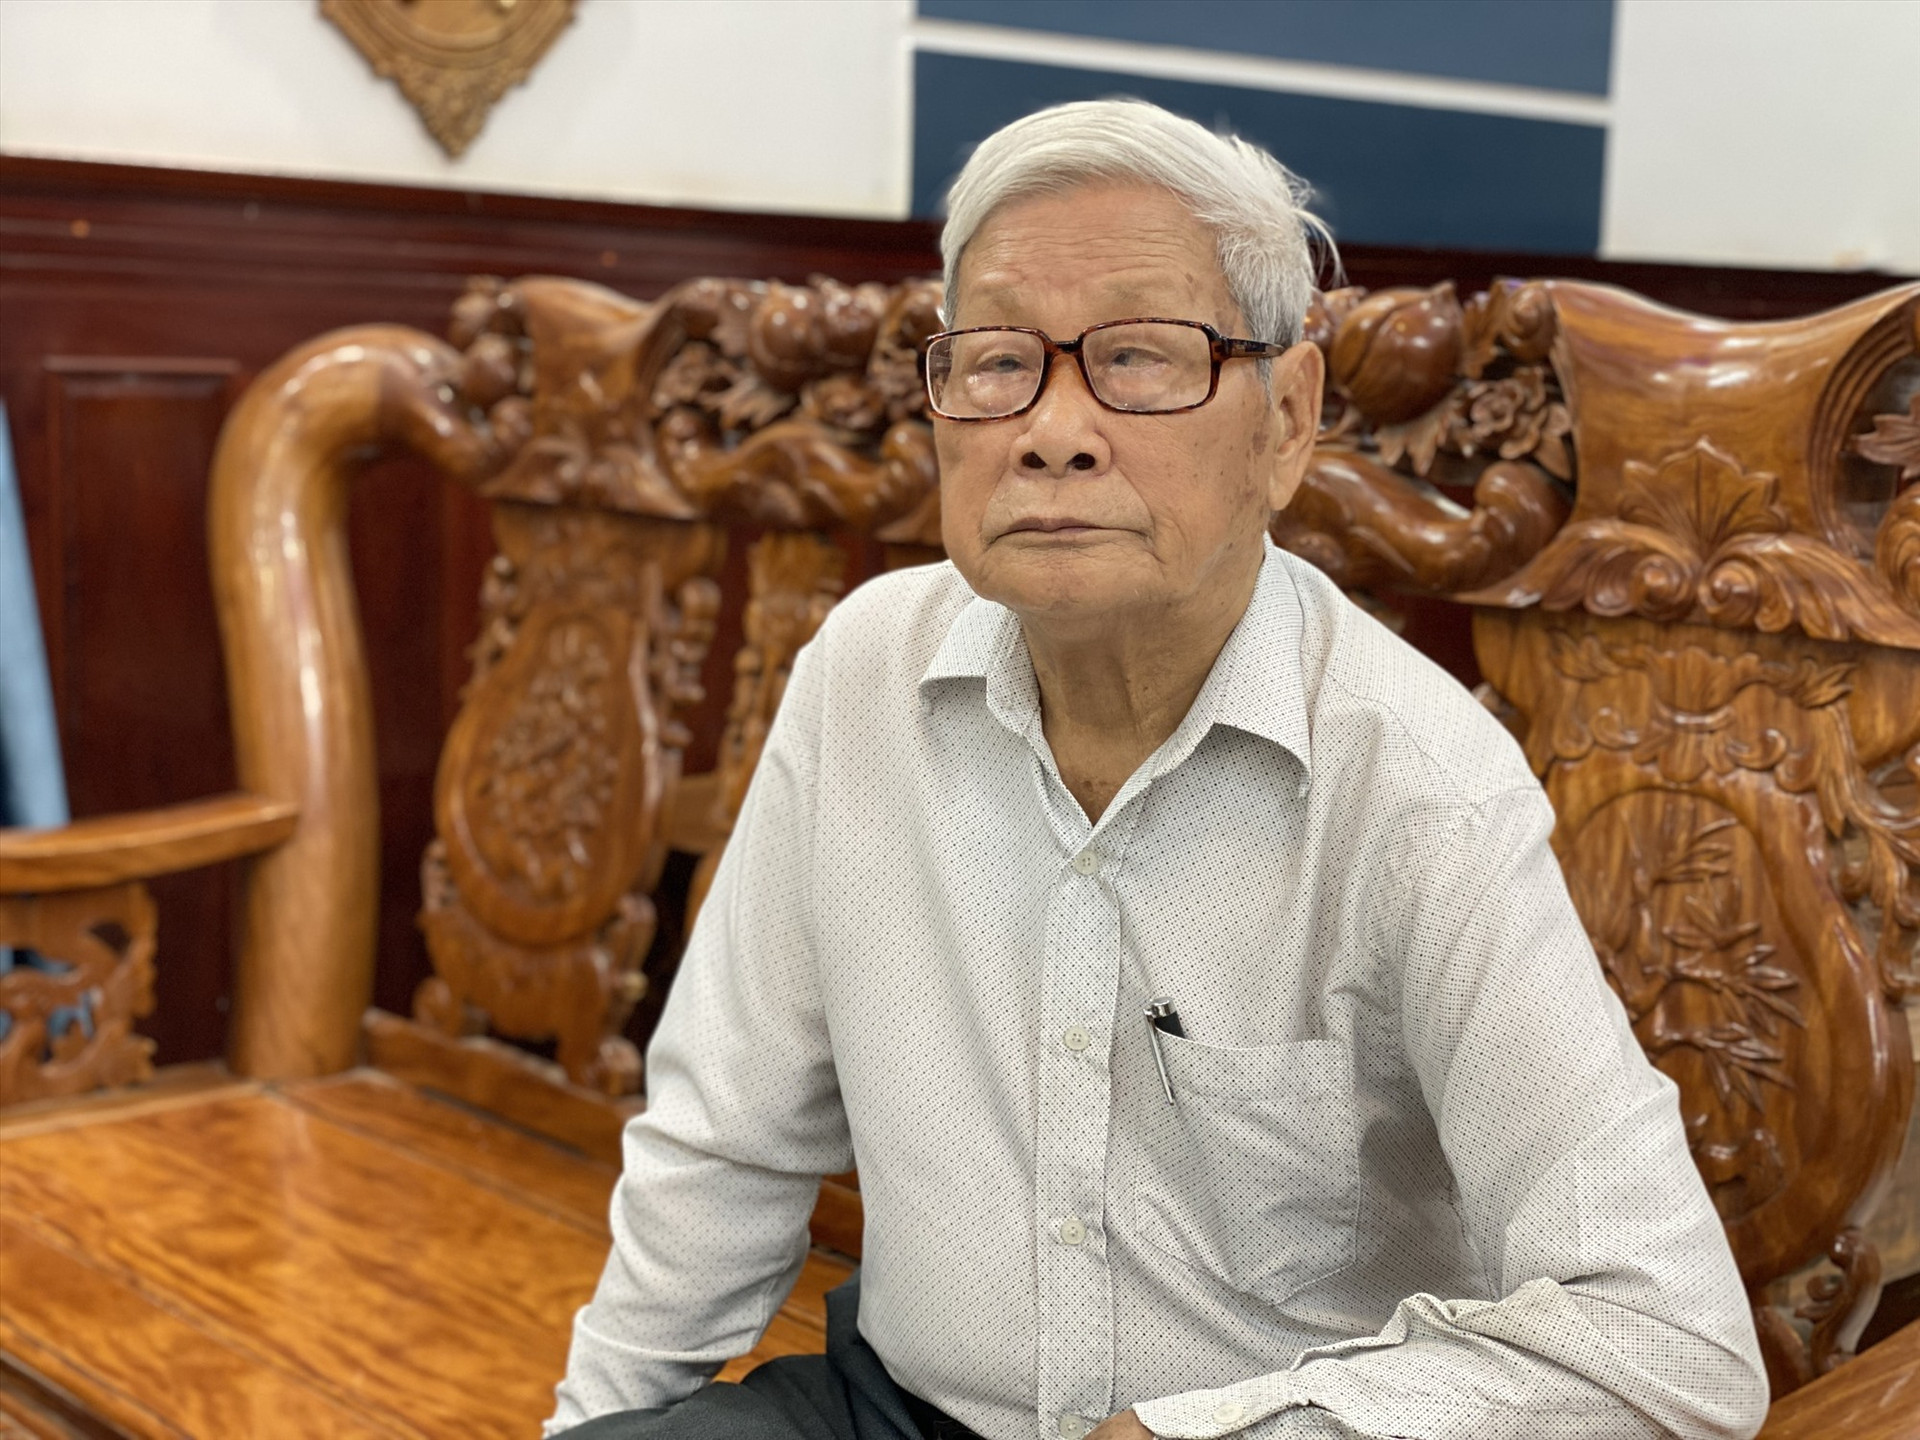 Ở tuổi 92, cụ Trần Ngọc Du vẫn đam mê thiện nguyện. Ảnh: H.H.Q